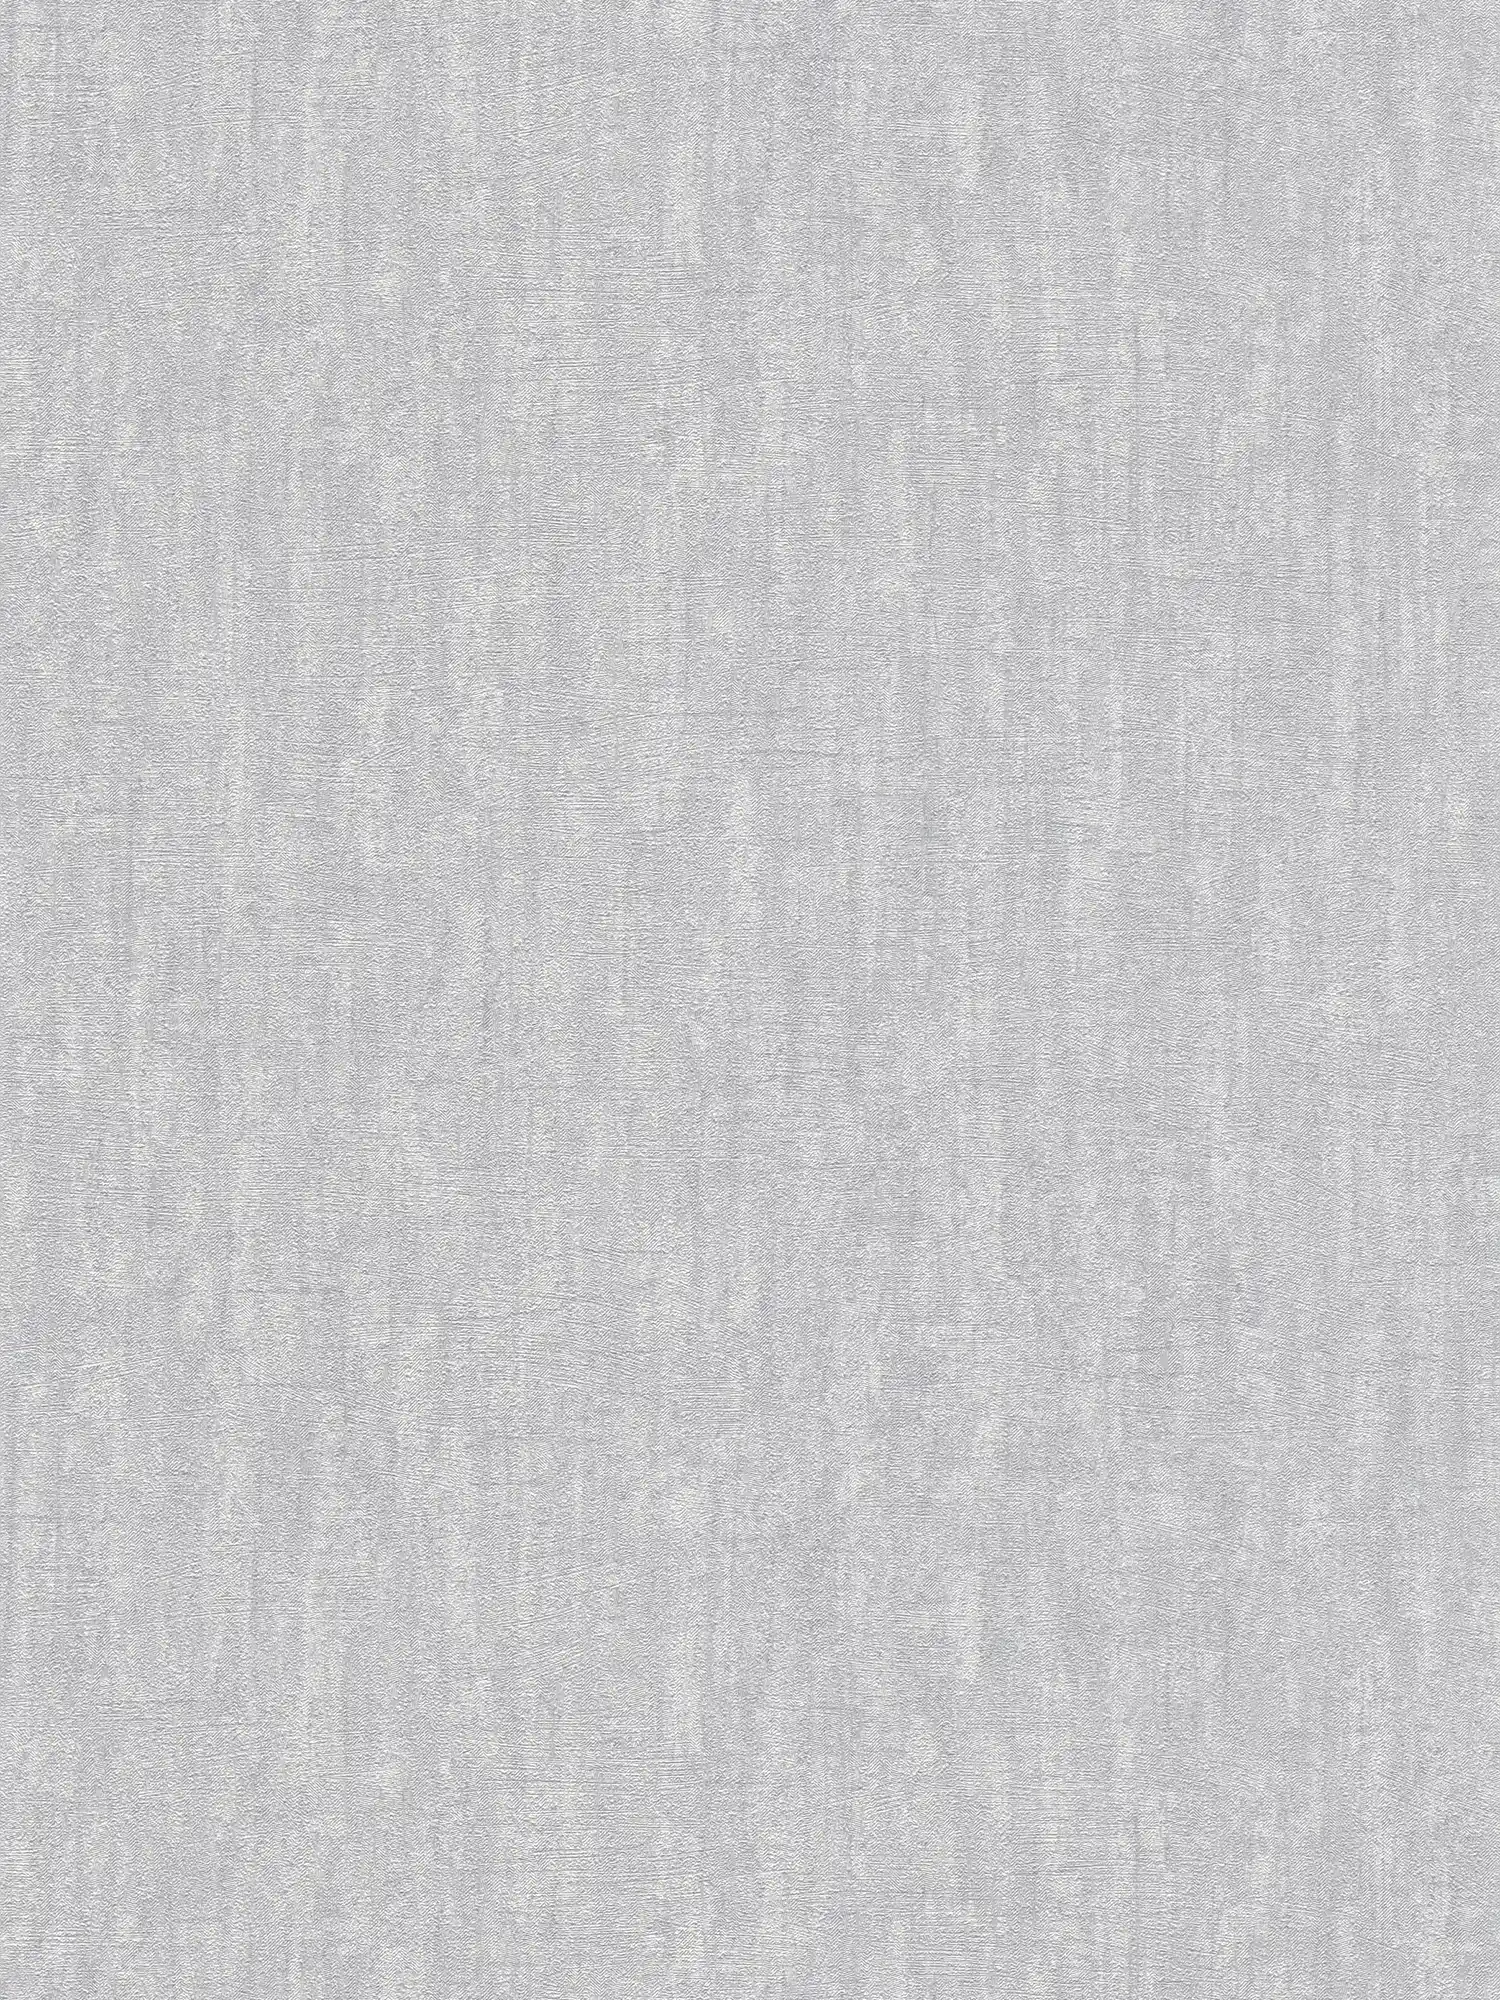 Papel pintado gris claro con textura, brillante - Gris
